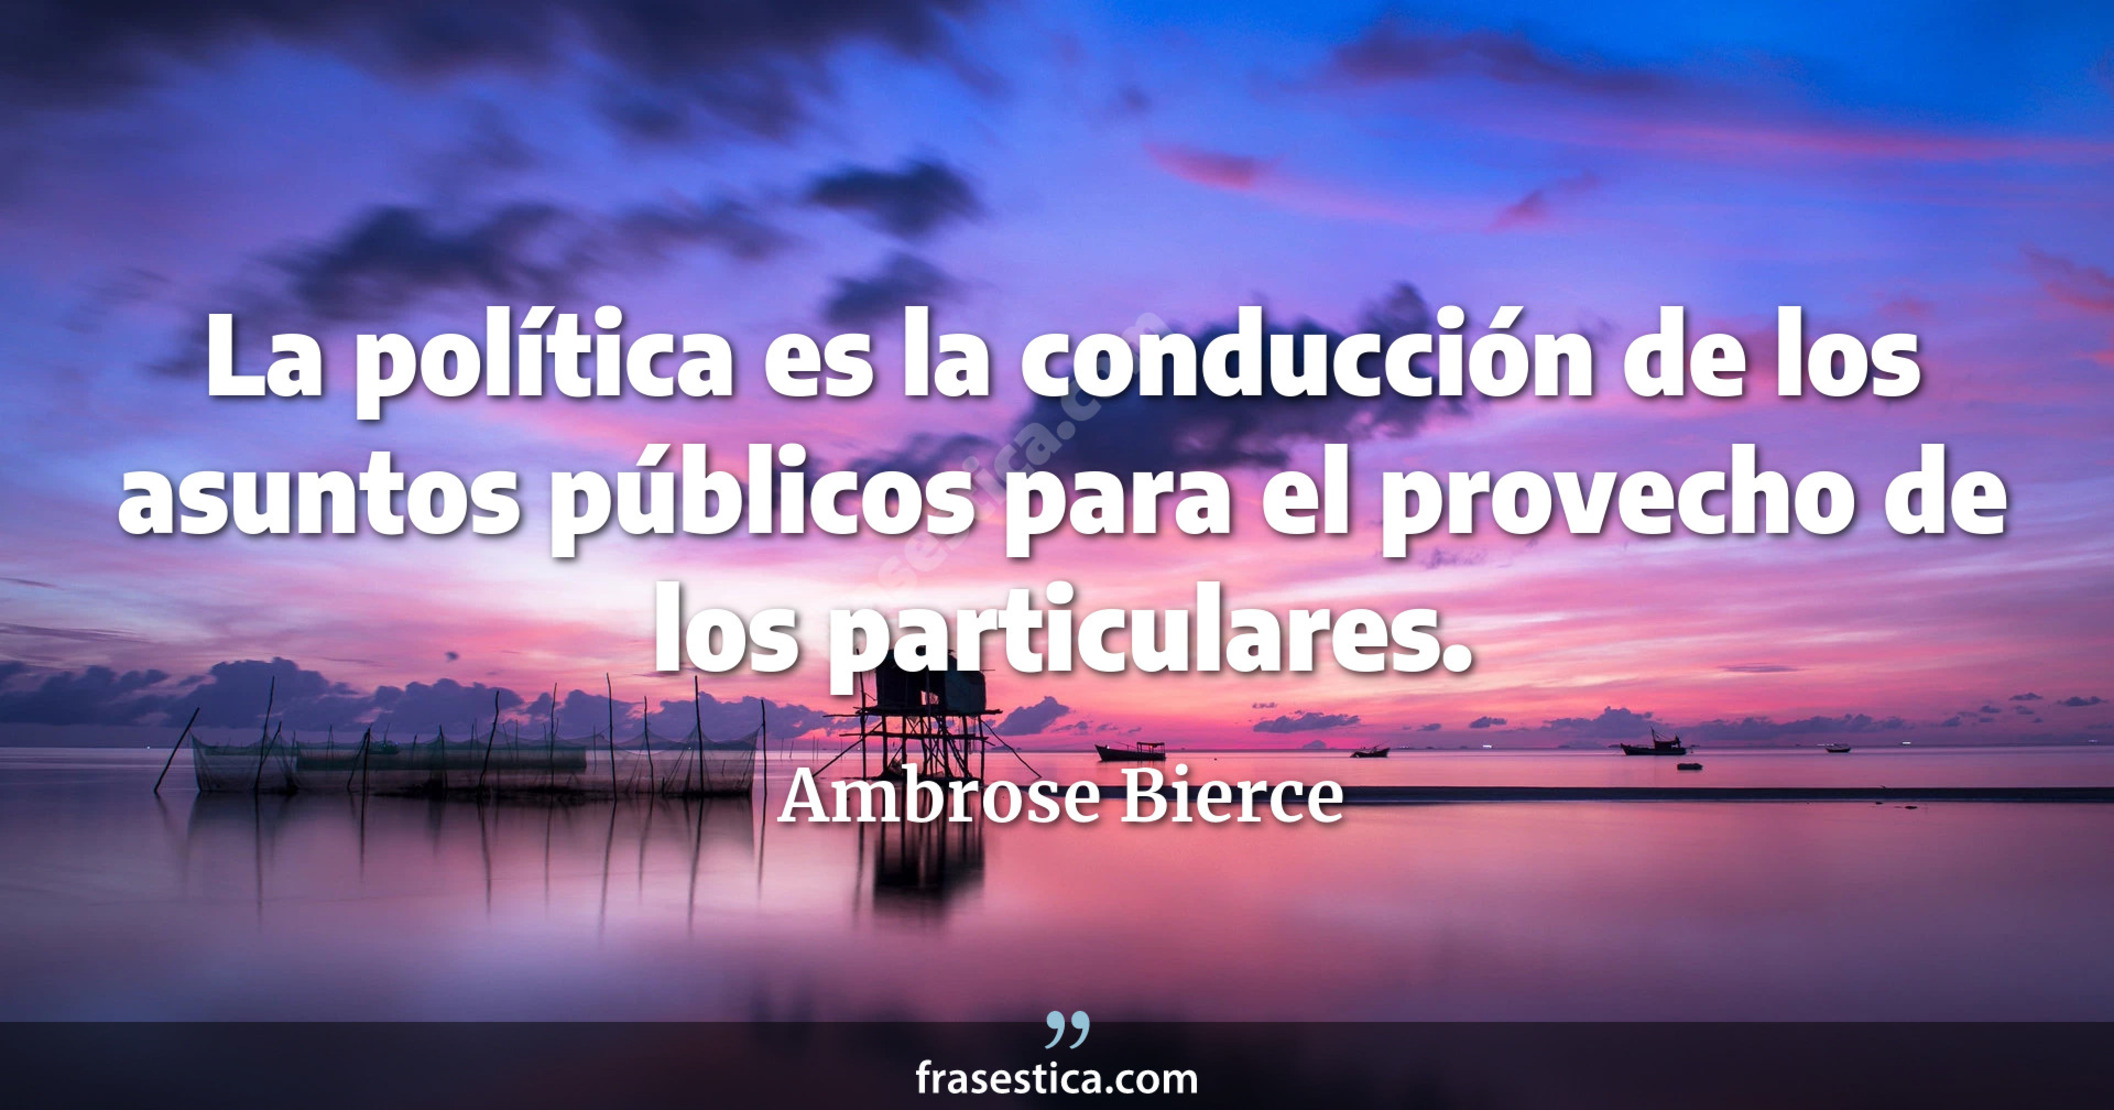 La política es la conducción de los asuntos públicos para el provecho de los particulares. - Ambrose Bierce